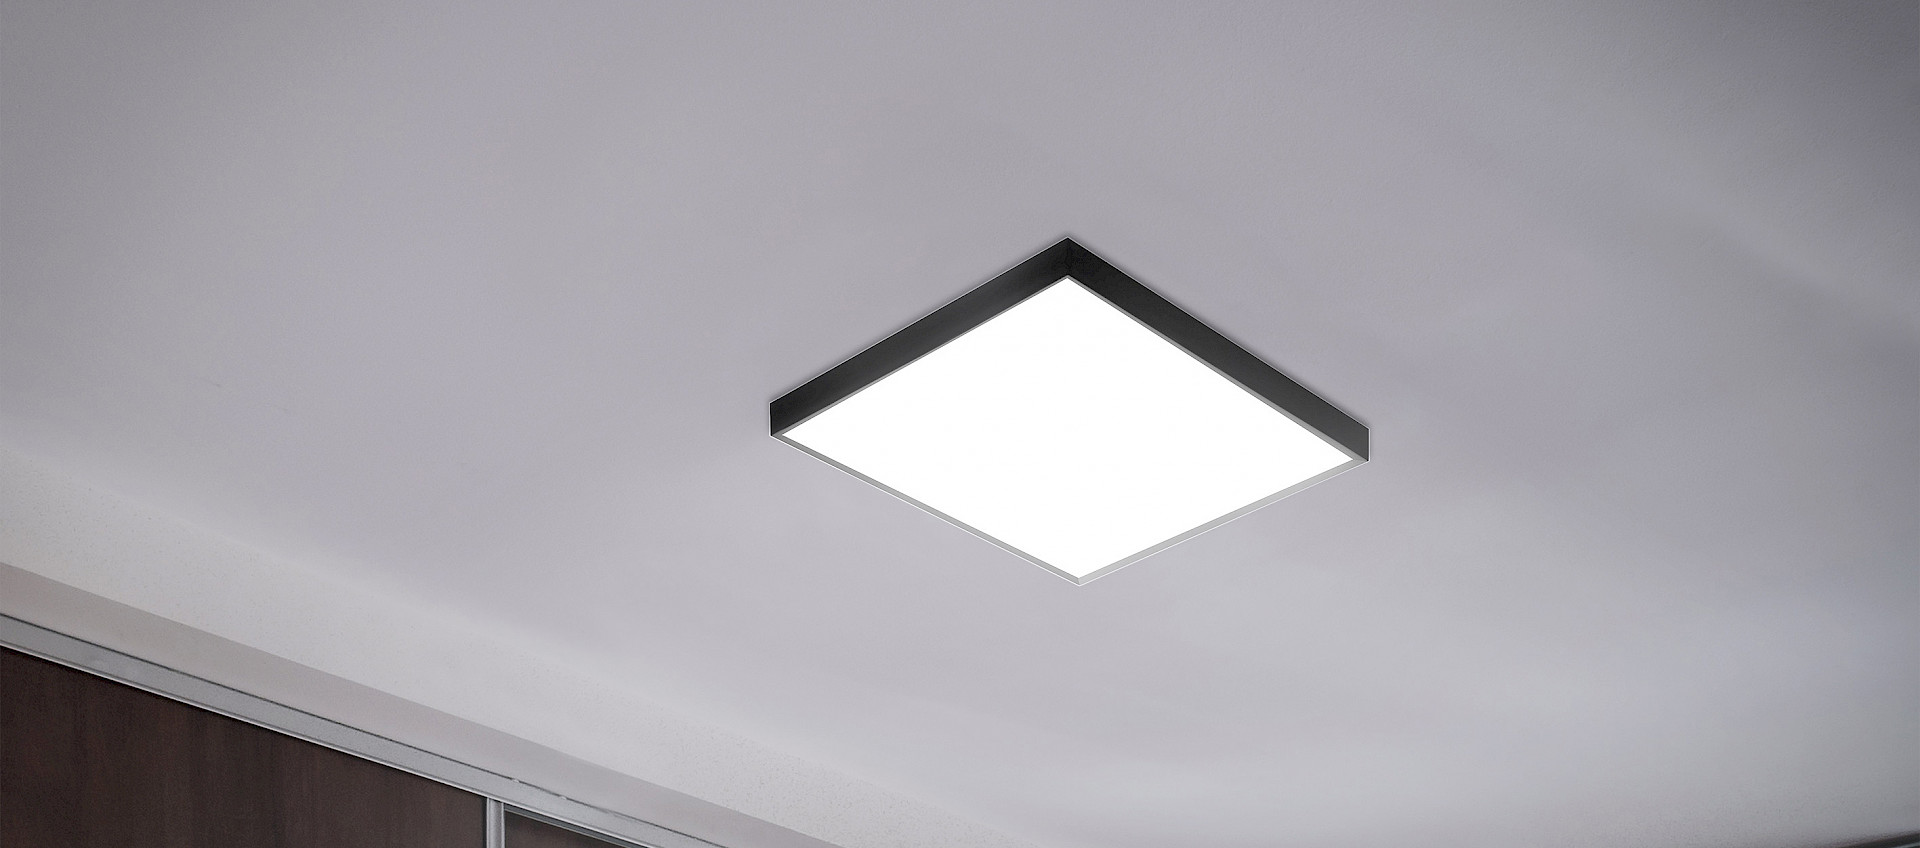 TeamItalia - Large ceiling light 55x55